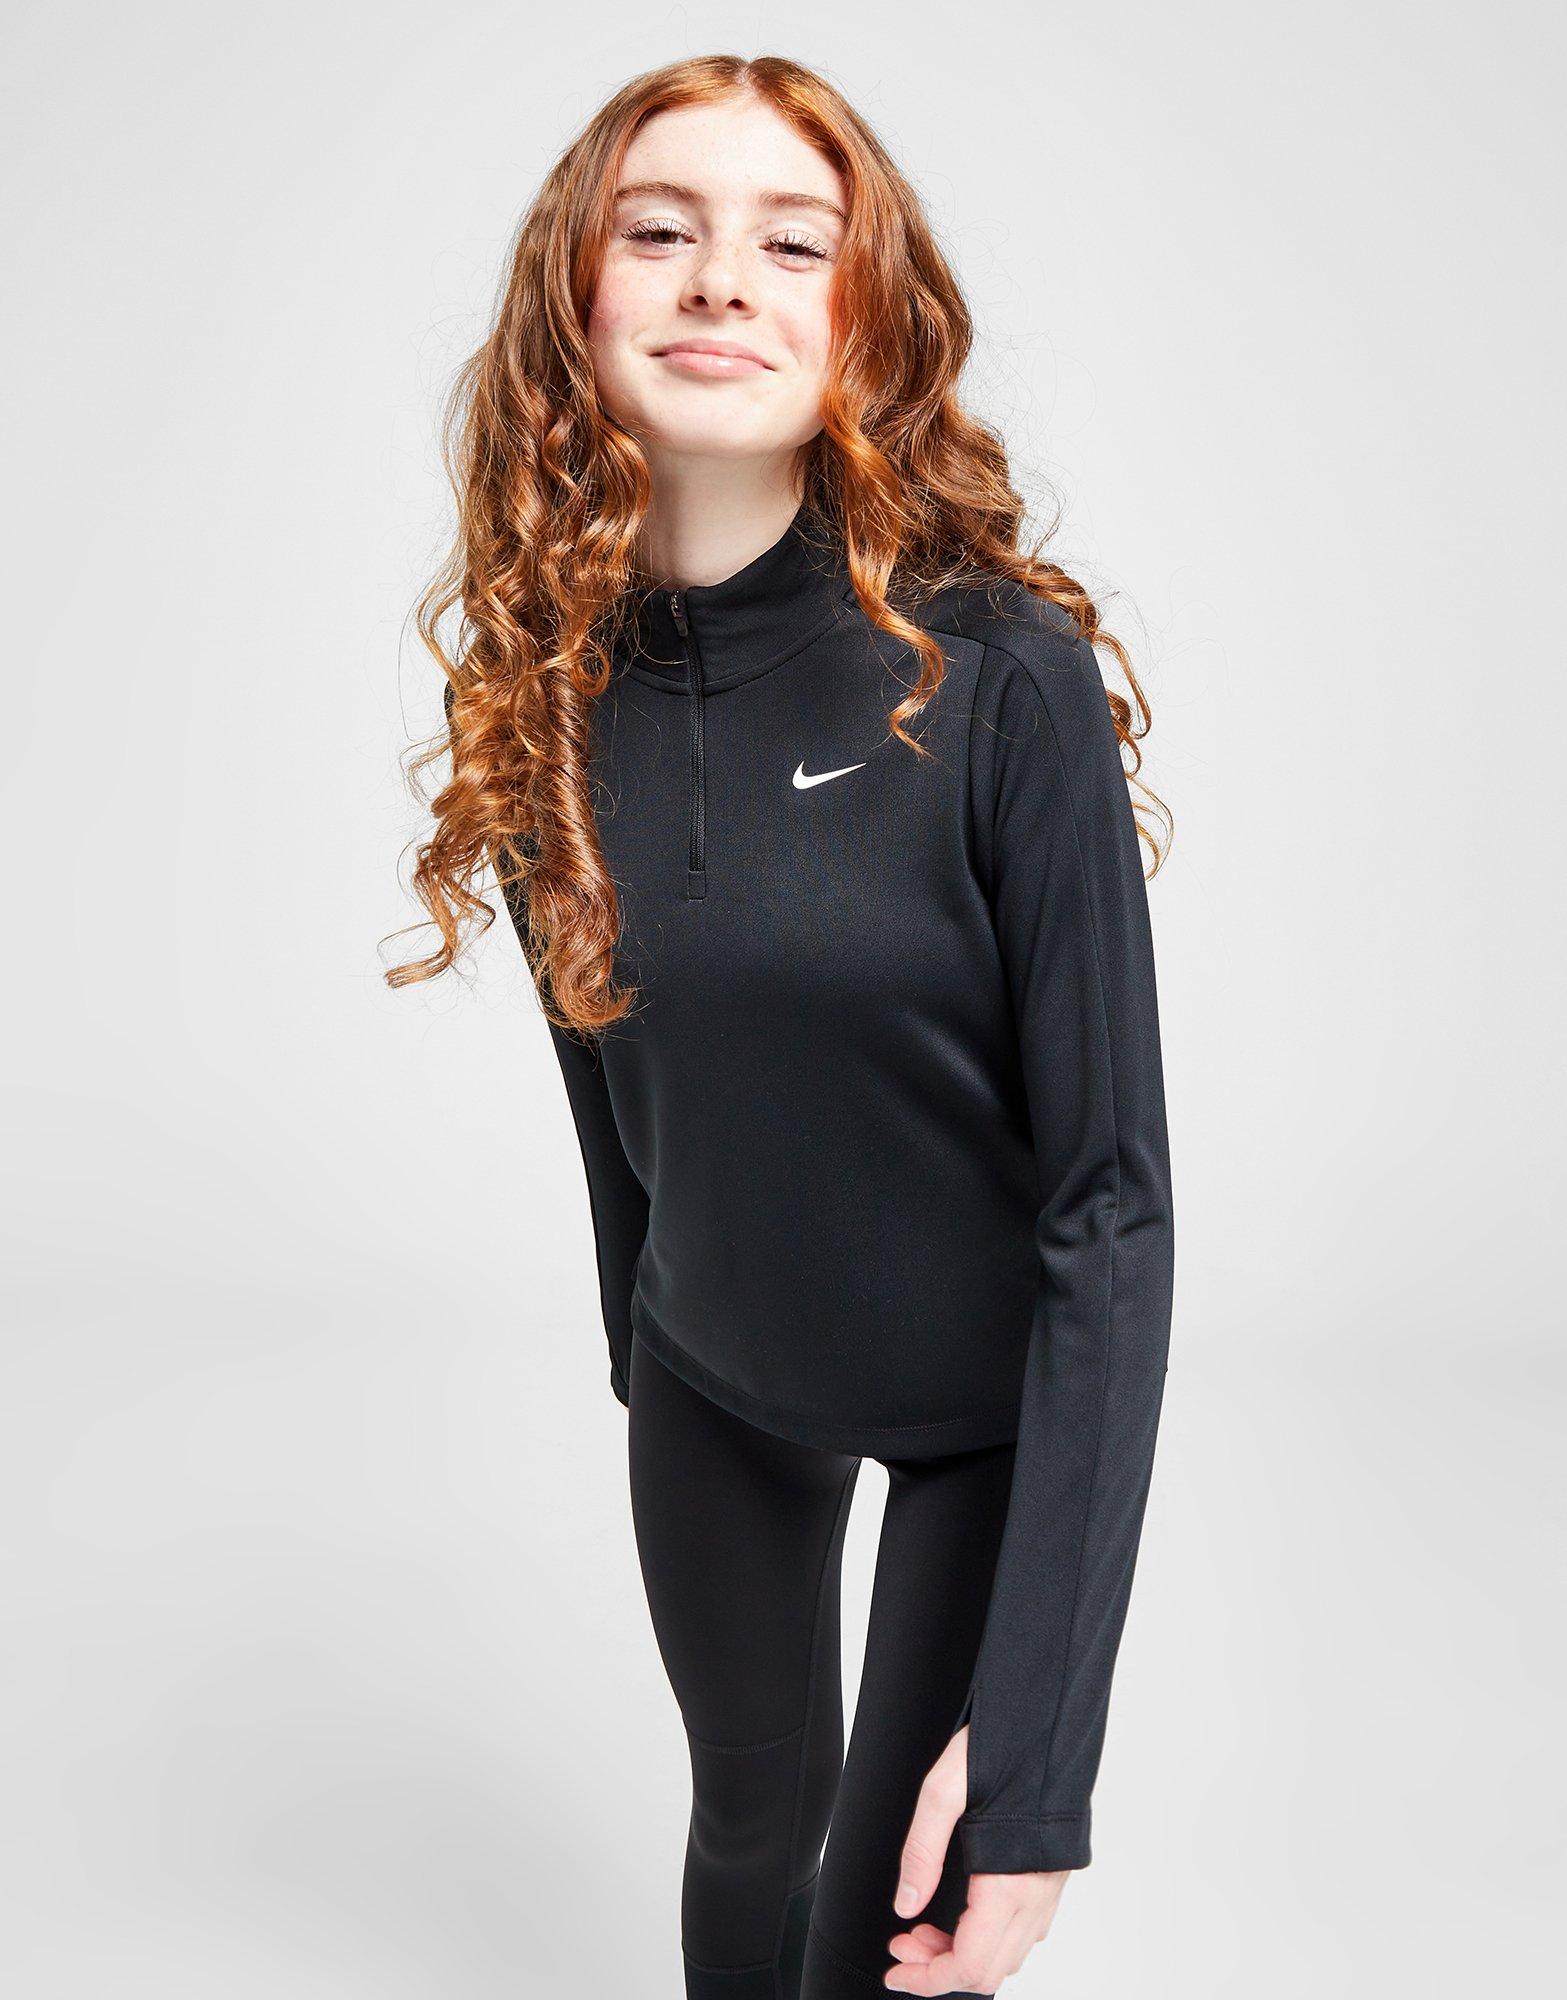 Black Nike Girls' Fitness Long Sleeve 1/2 Zip Top Junior